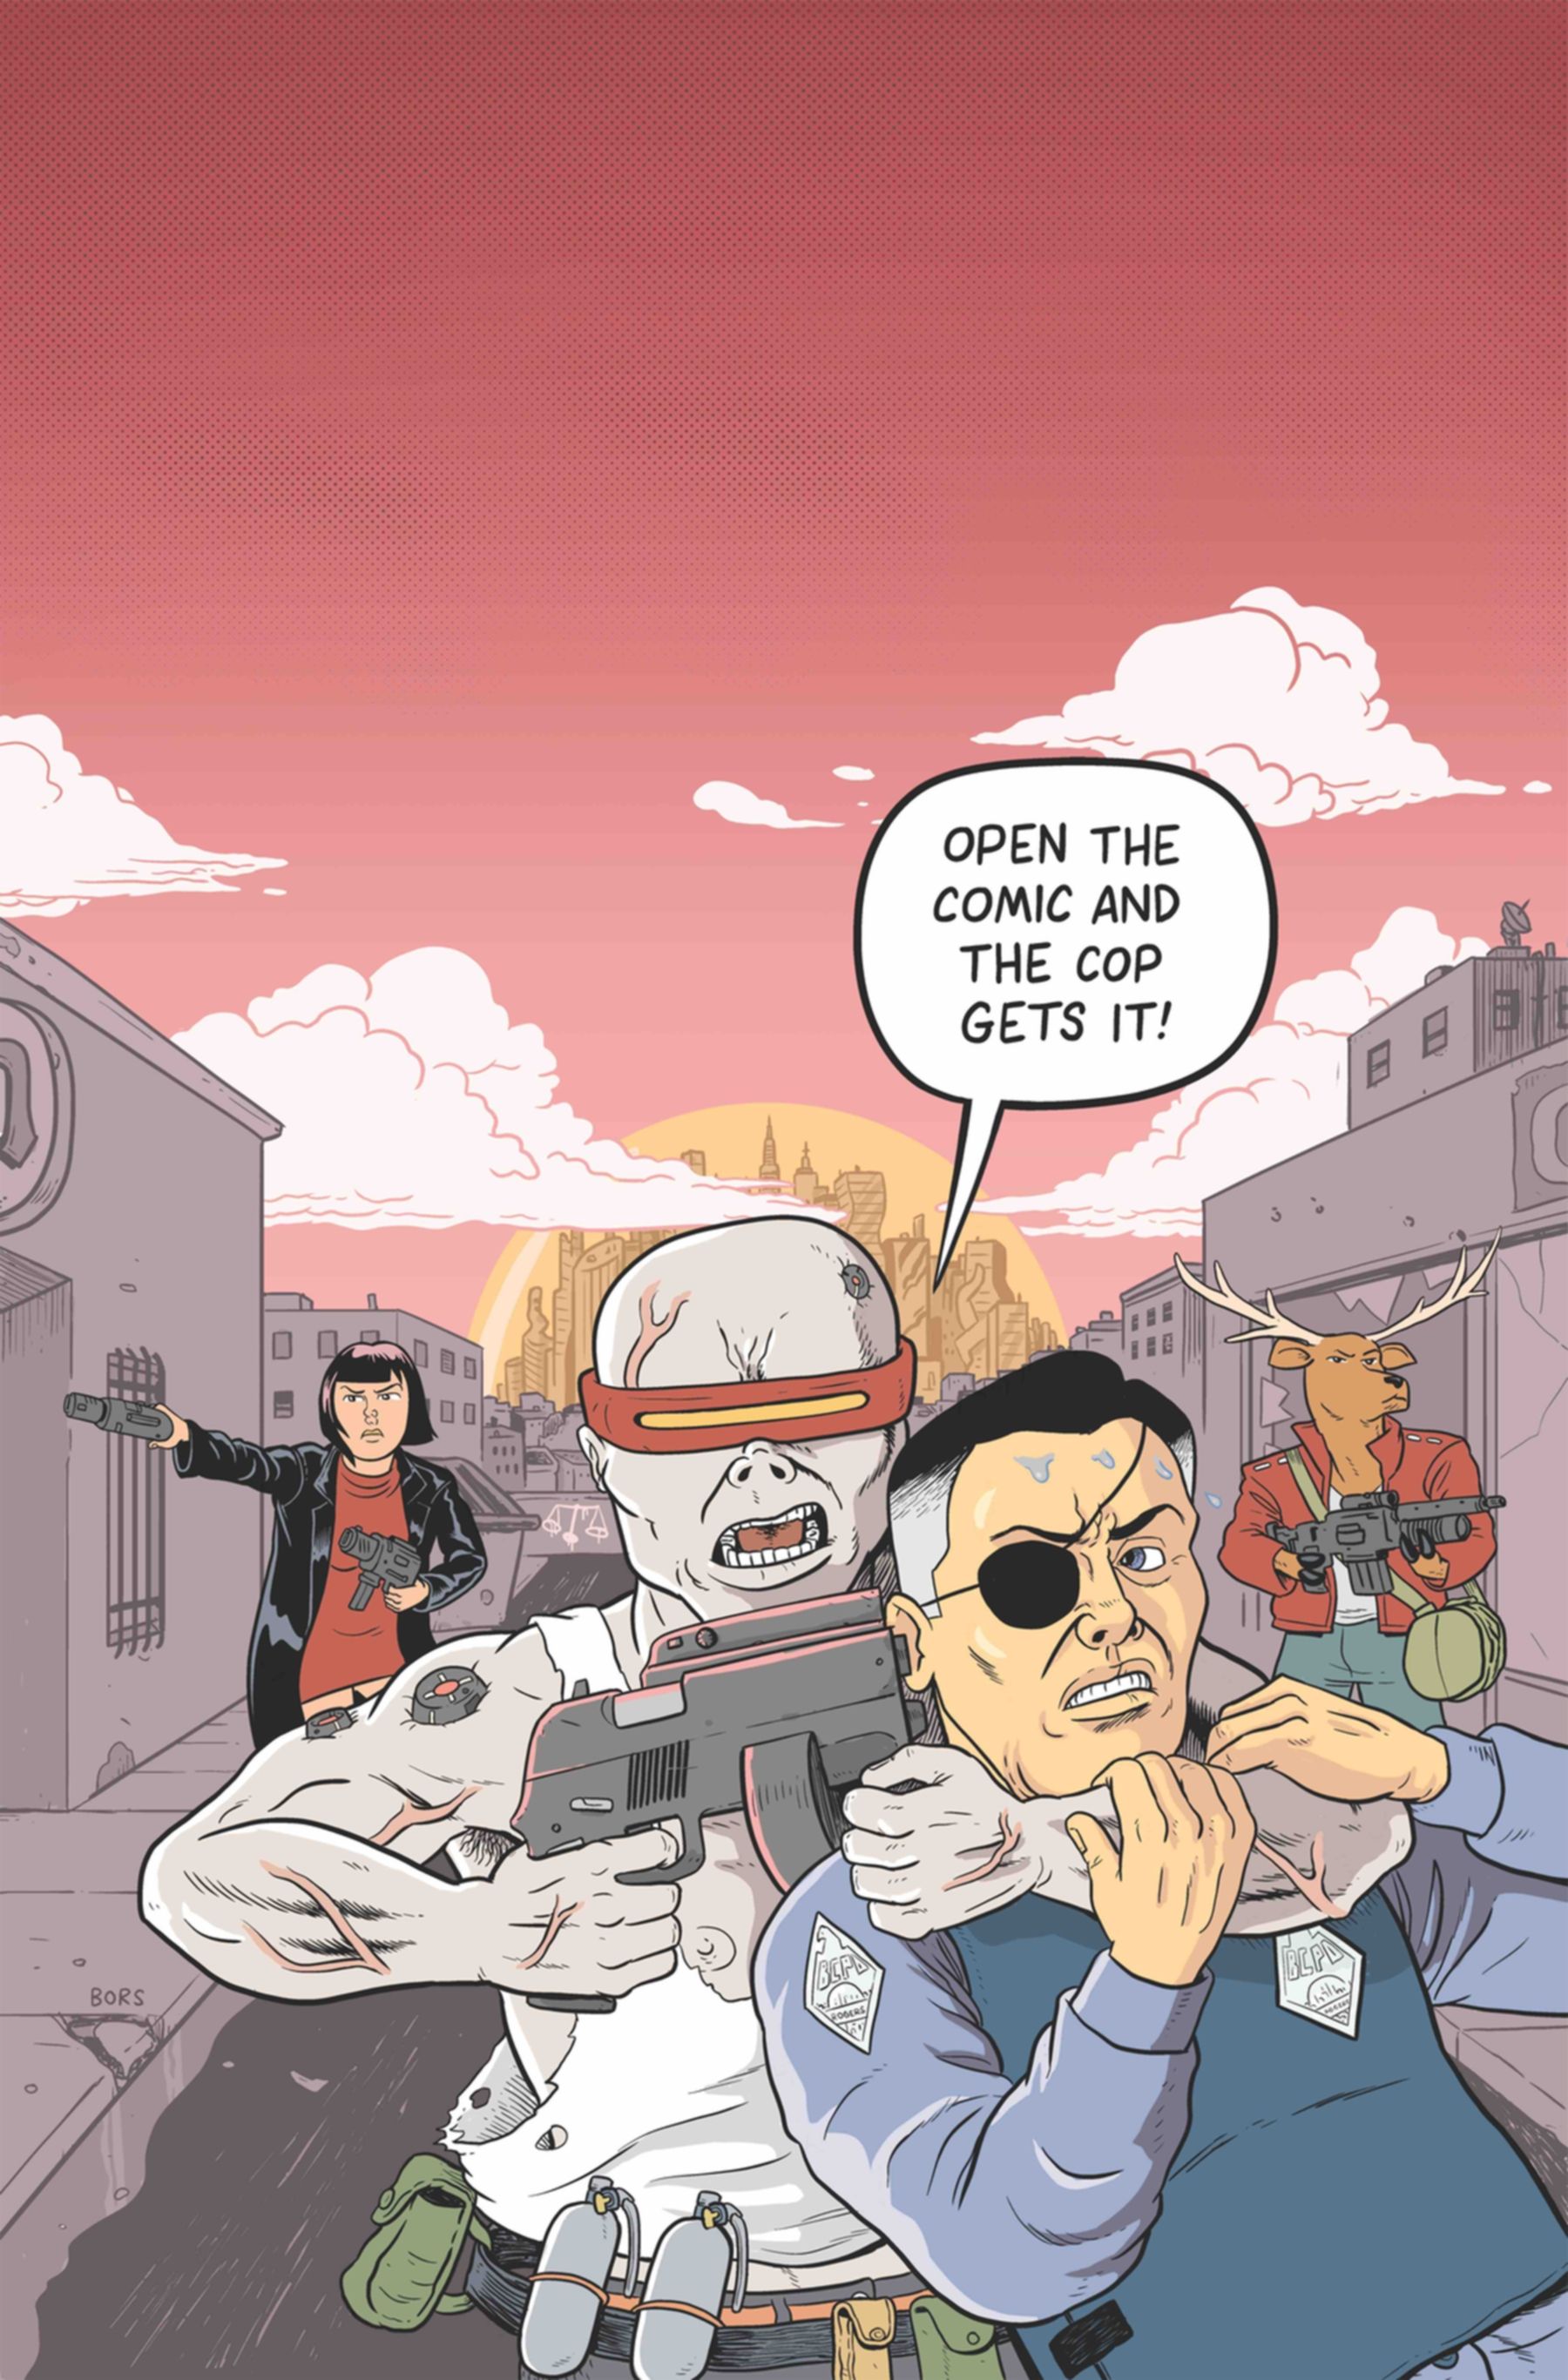 Ultra-Violent Satire Justice Warriors Is RoboCop for 2022